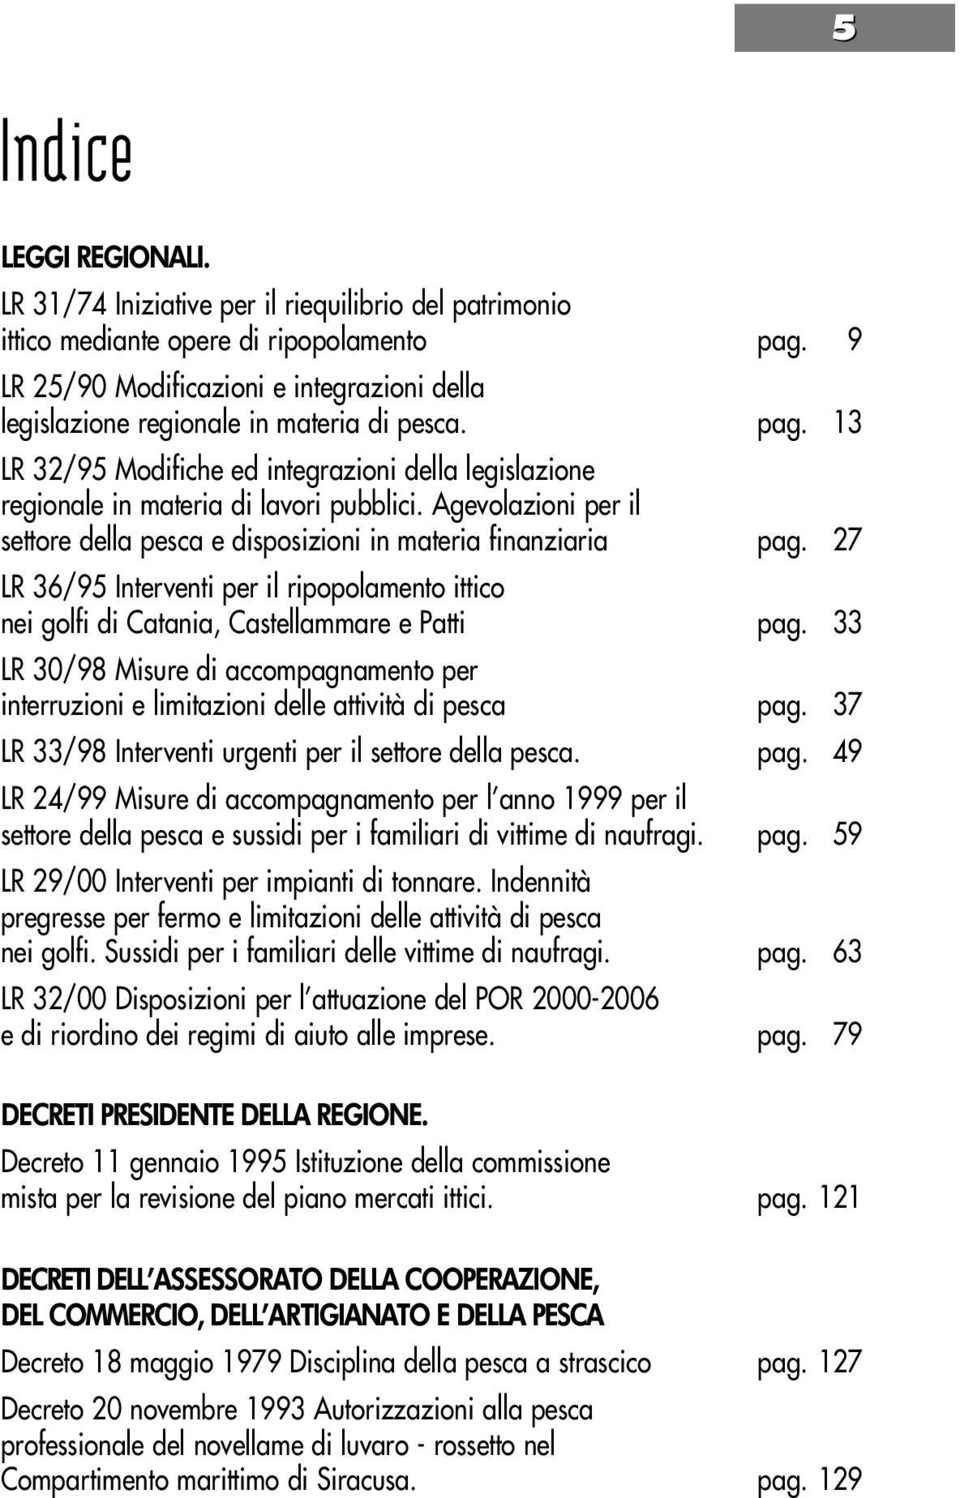 Agevolazioni per il settore della pesca e disposizioni in materia finanziaria pag. 27 LR 36/95 Interventi per il ripopolamento ittico nei golfi di Catania, Castellammare e Patti pag.